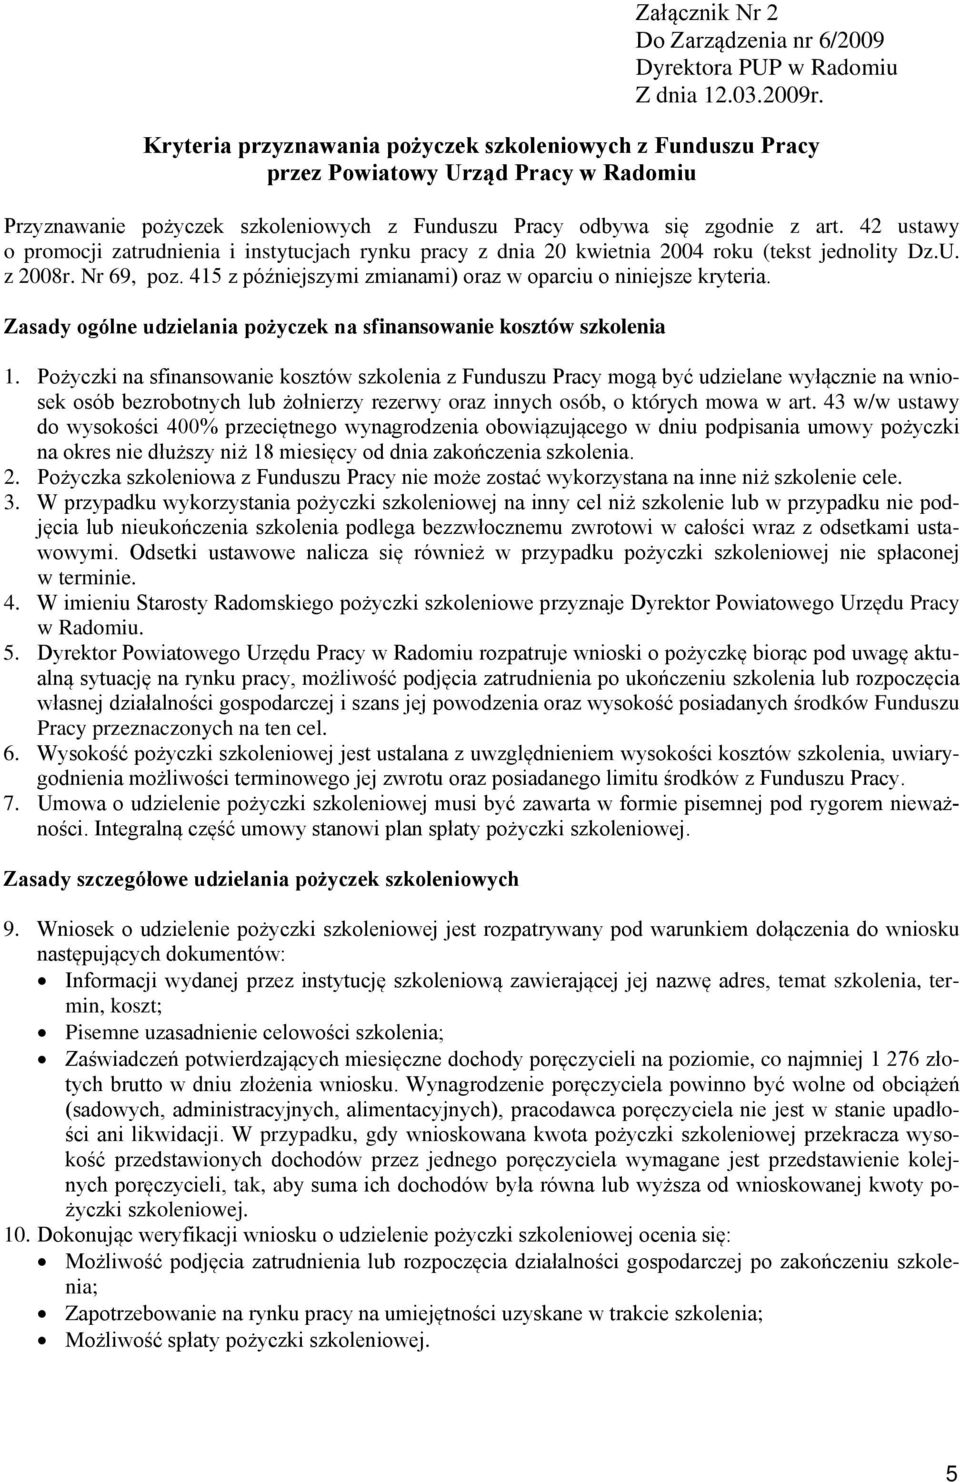 42 ustawy o promocji zatrudnienia i instytucjach rynku pracy z dnia 20 kwietnia 2004 roku (tekst jednolity Dz.U. z 2008r. Nr 69, poz. 415 z późniejszymi zmianami) oraz w oparciu o niniejsze kryteria.